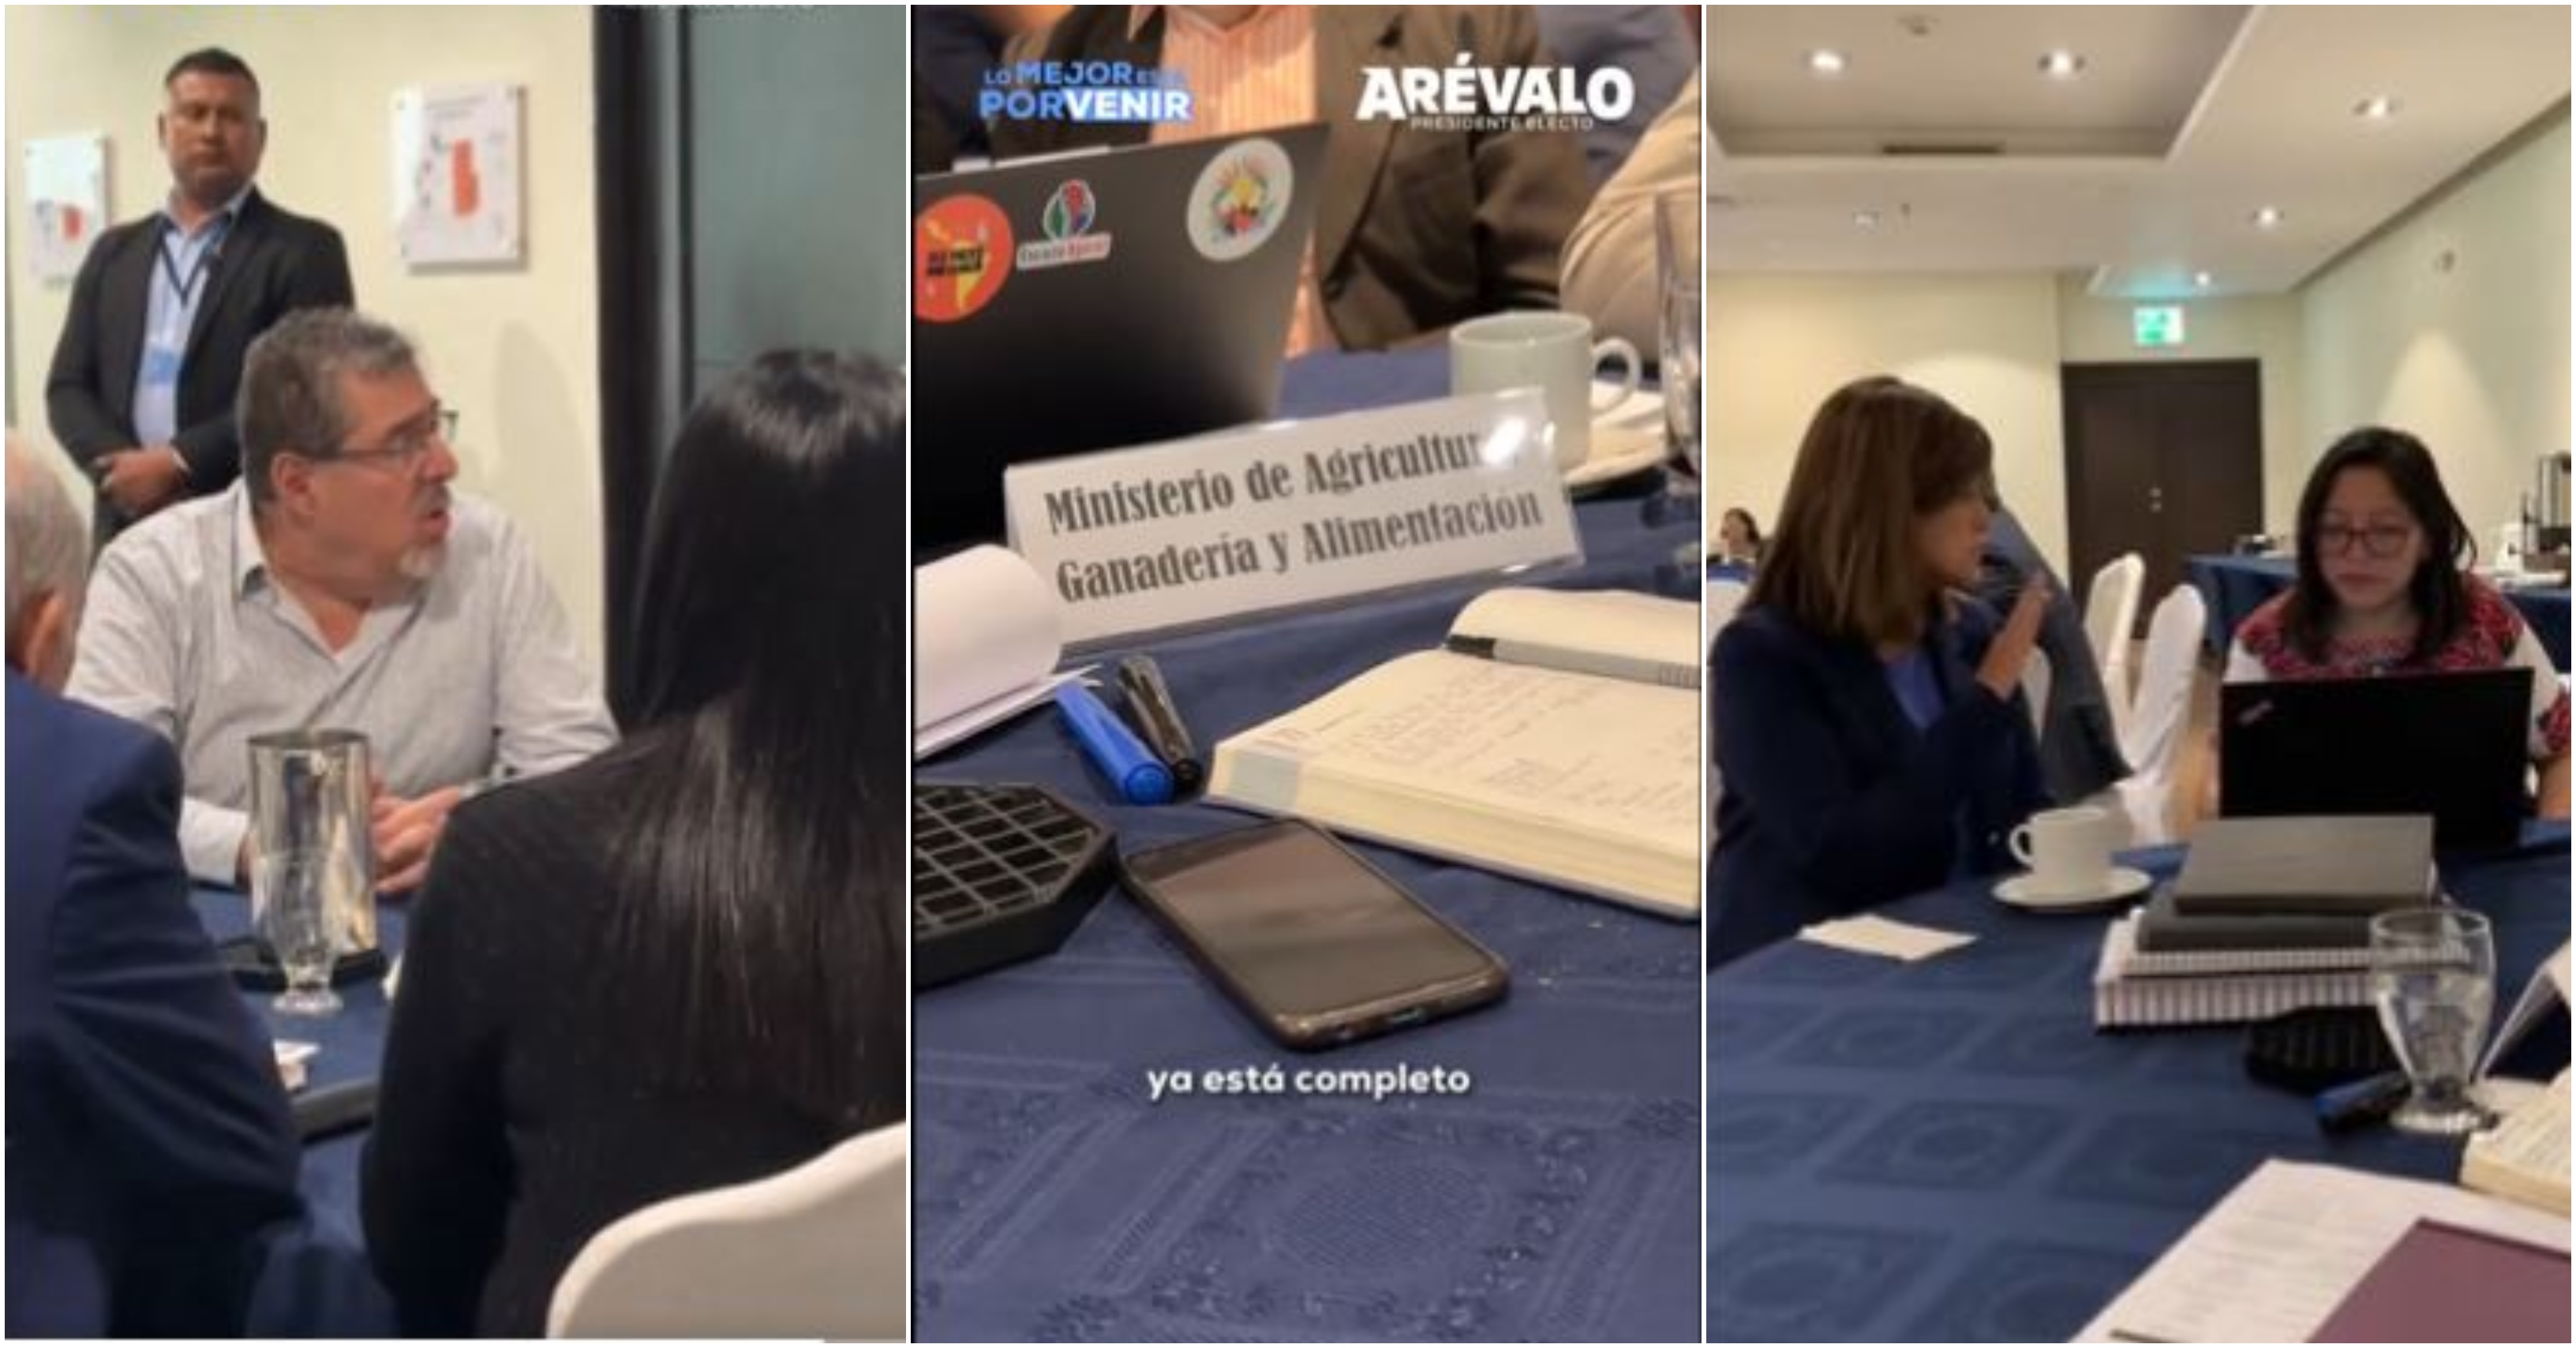 Estas son algunas de las imágines que Bernardo Arévalo compartió en un vídeo que publicaron en sus redes sociales. (Foto Prensa Libre: Captura de pantalla).